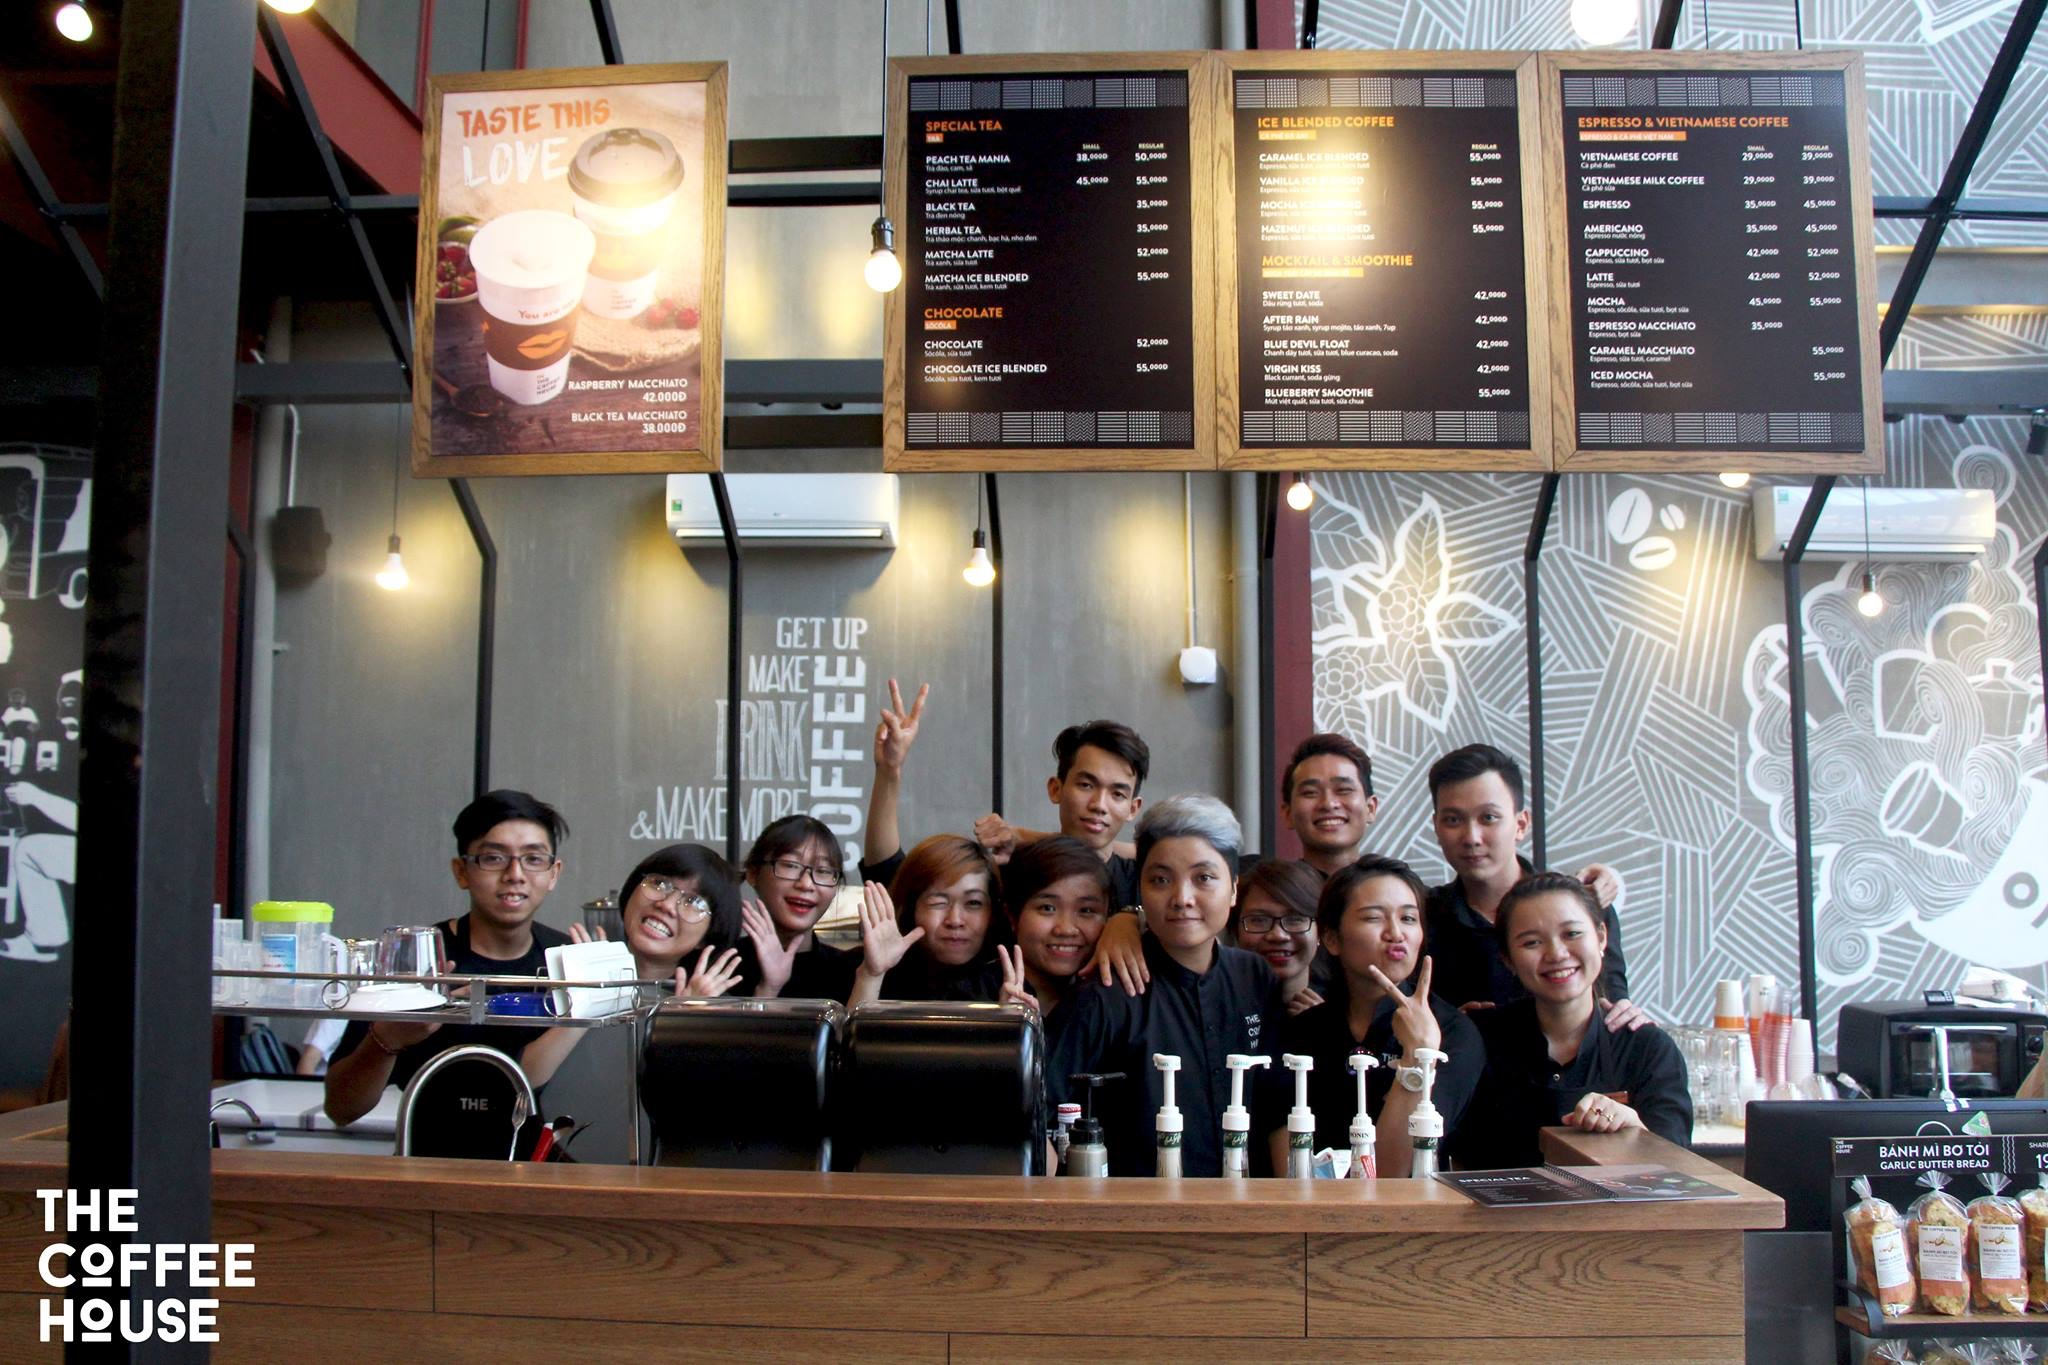 Chuỗi The Coffee House tạo nên trải nghiệm khách hàng tốt nhờ chất lượng phục vụ đồng đều